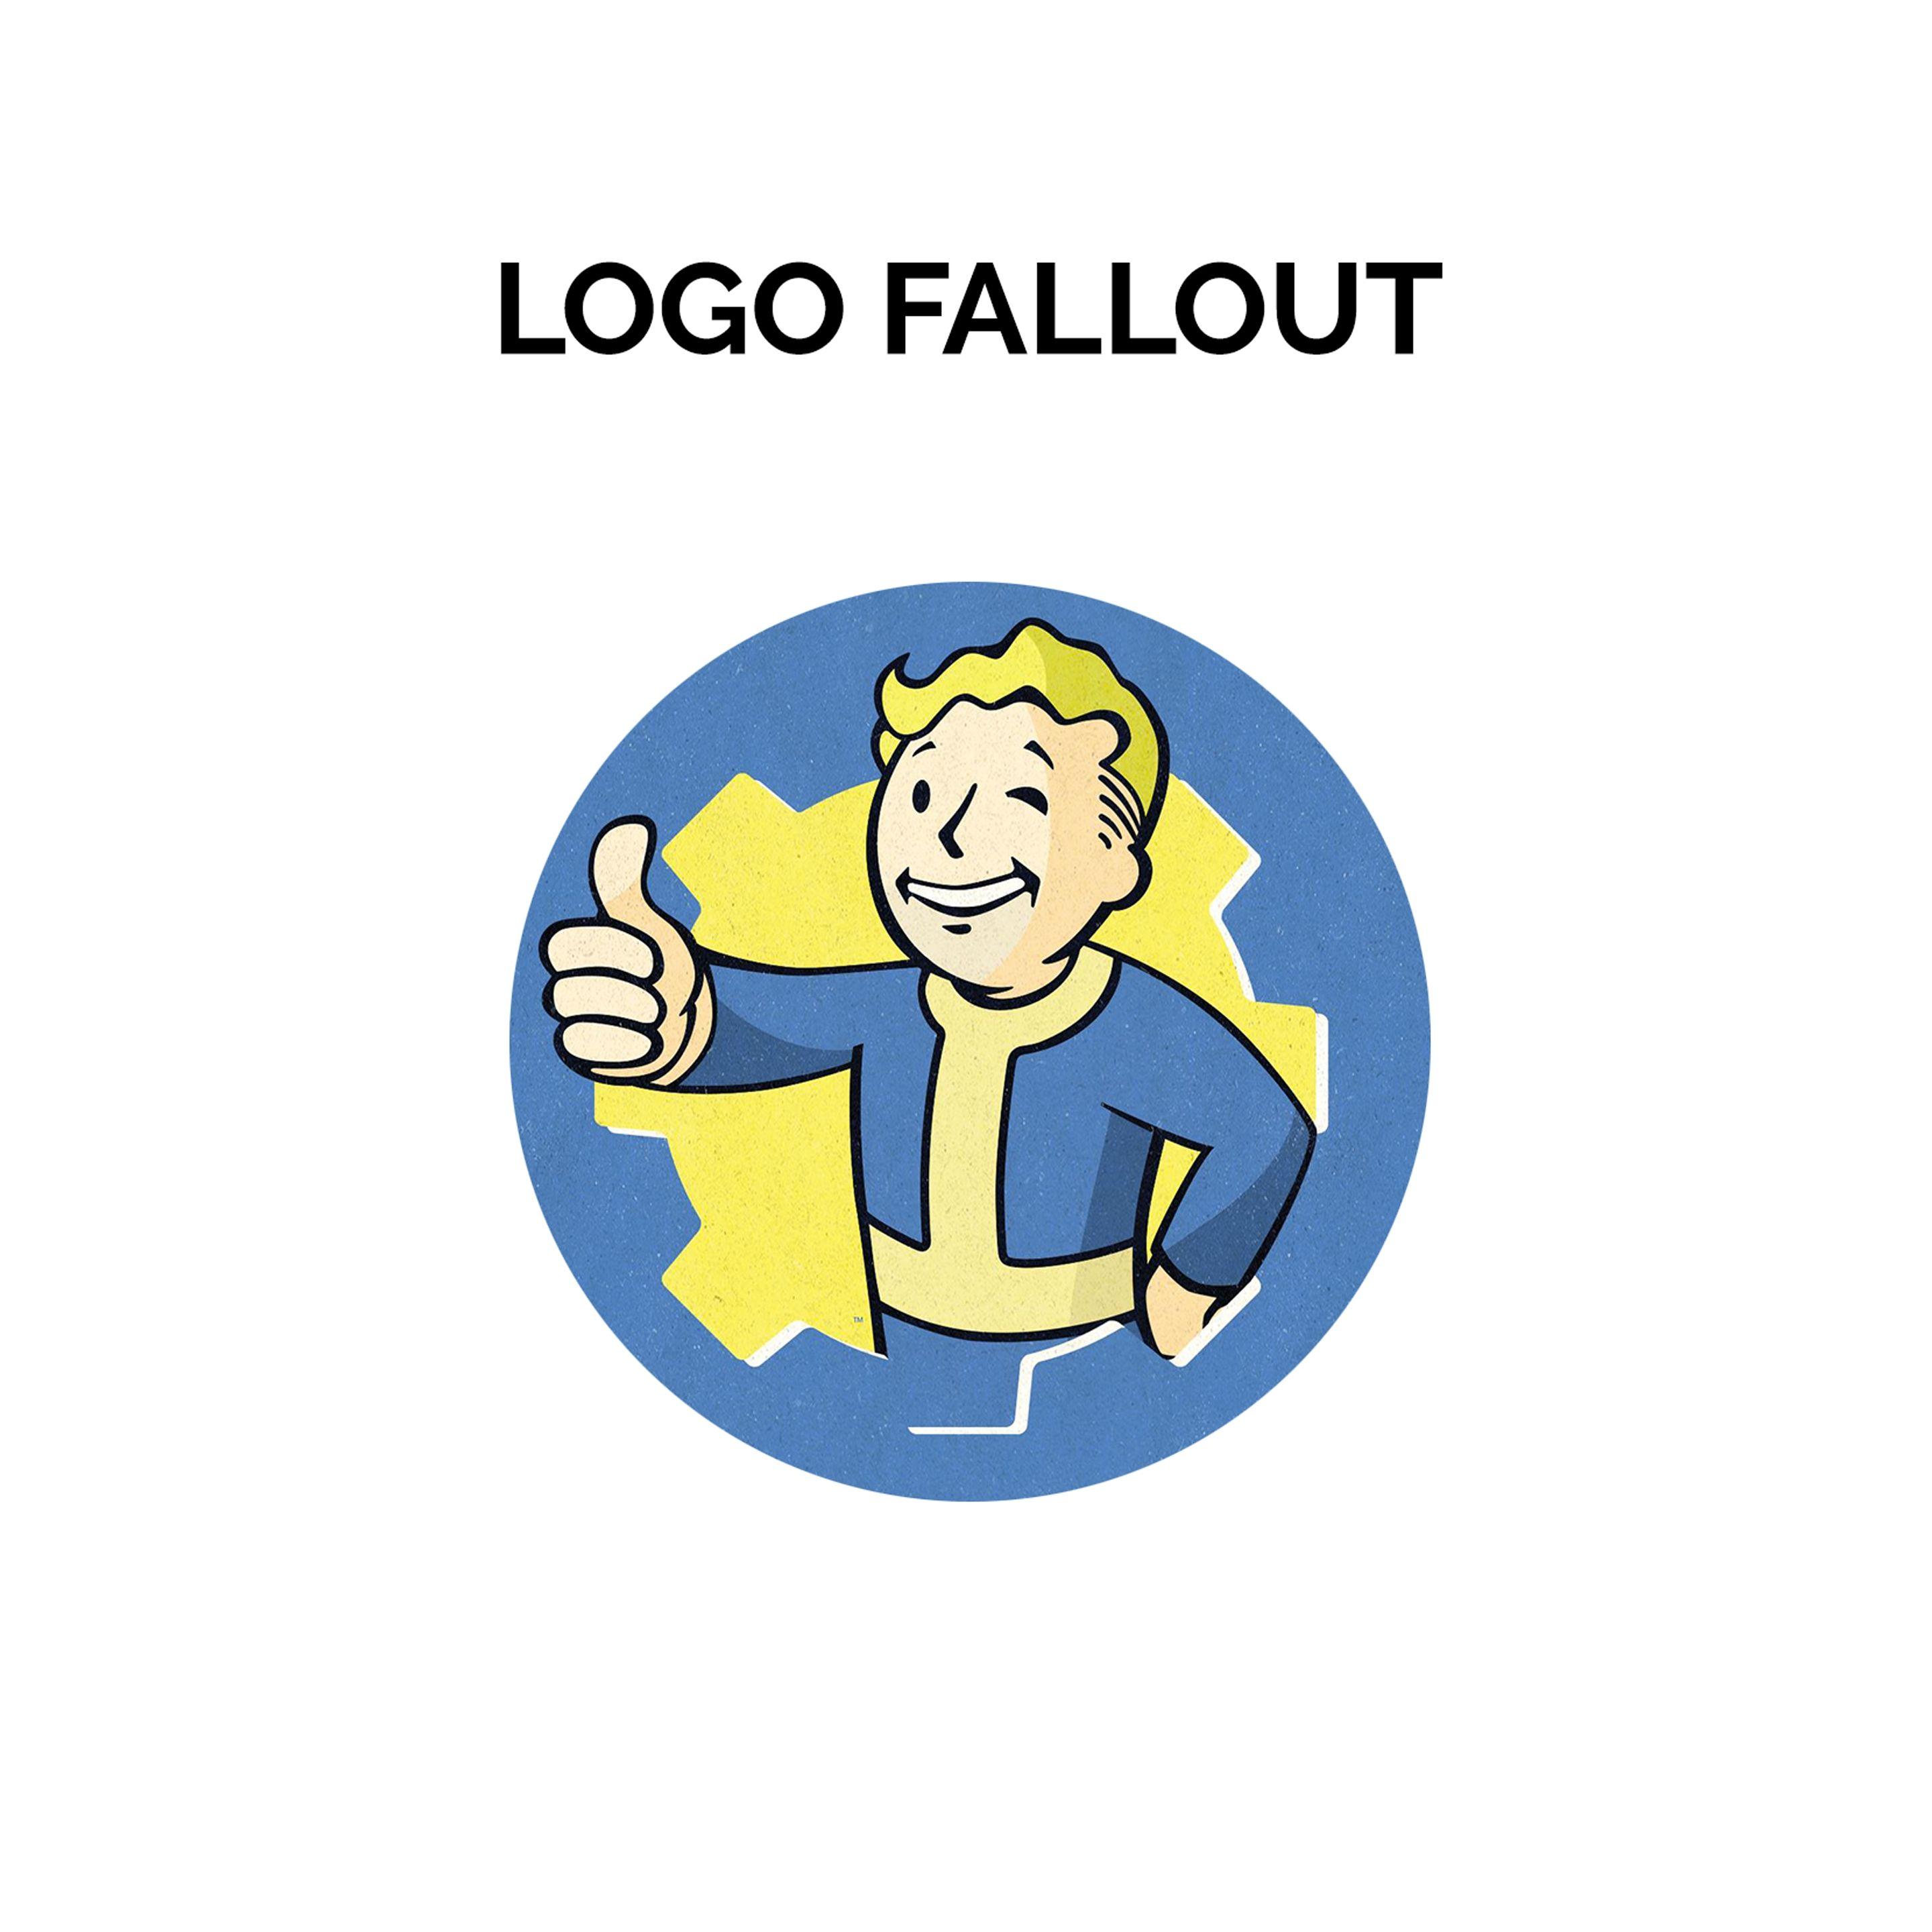 Fallout Logo - Logo PS4 Controller Fallout